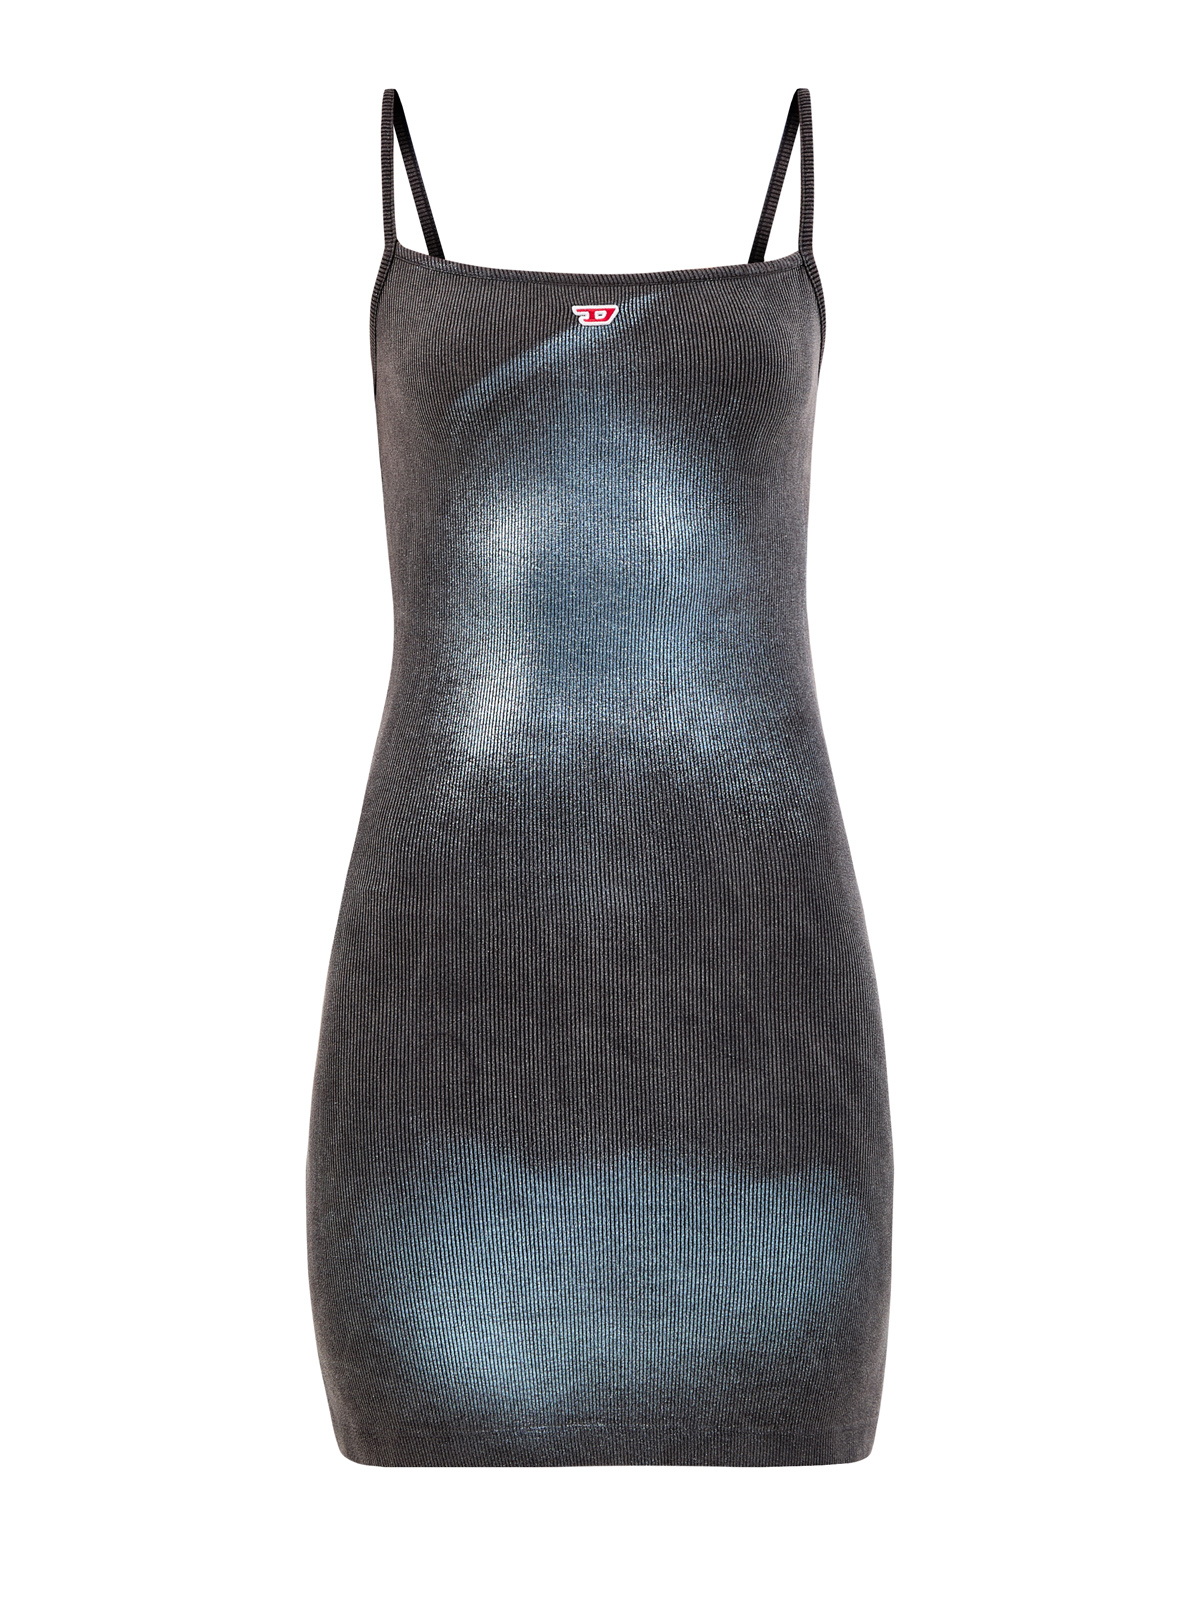 Платье D-Hopy-N2 с металлизированным напылением и логотипом DIESEL, цвет серый, размер S;M